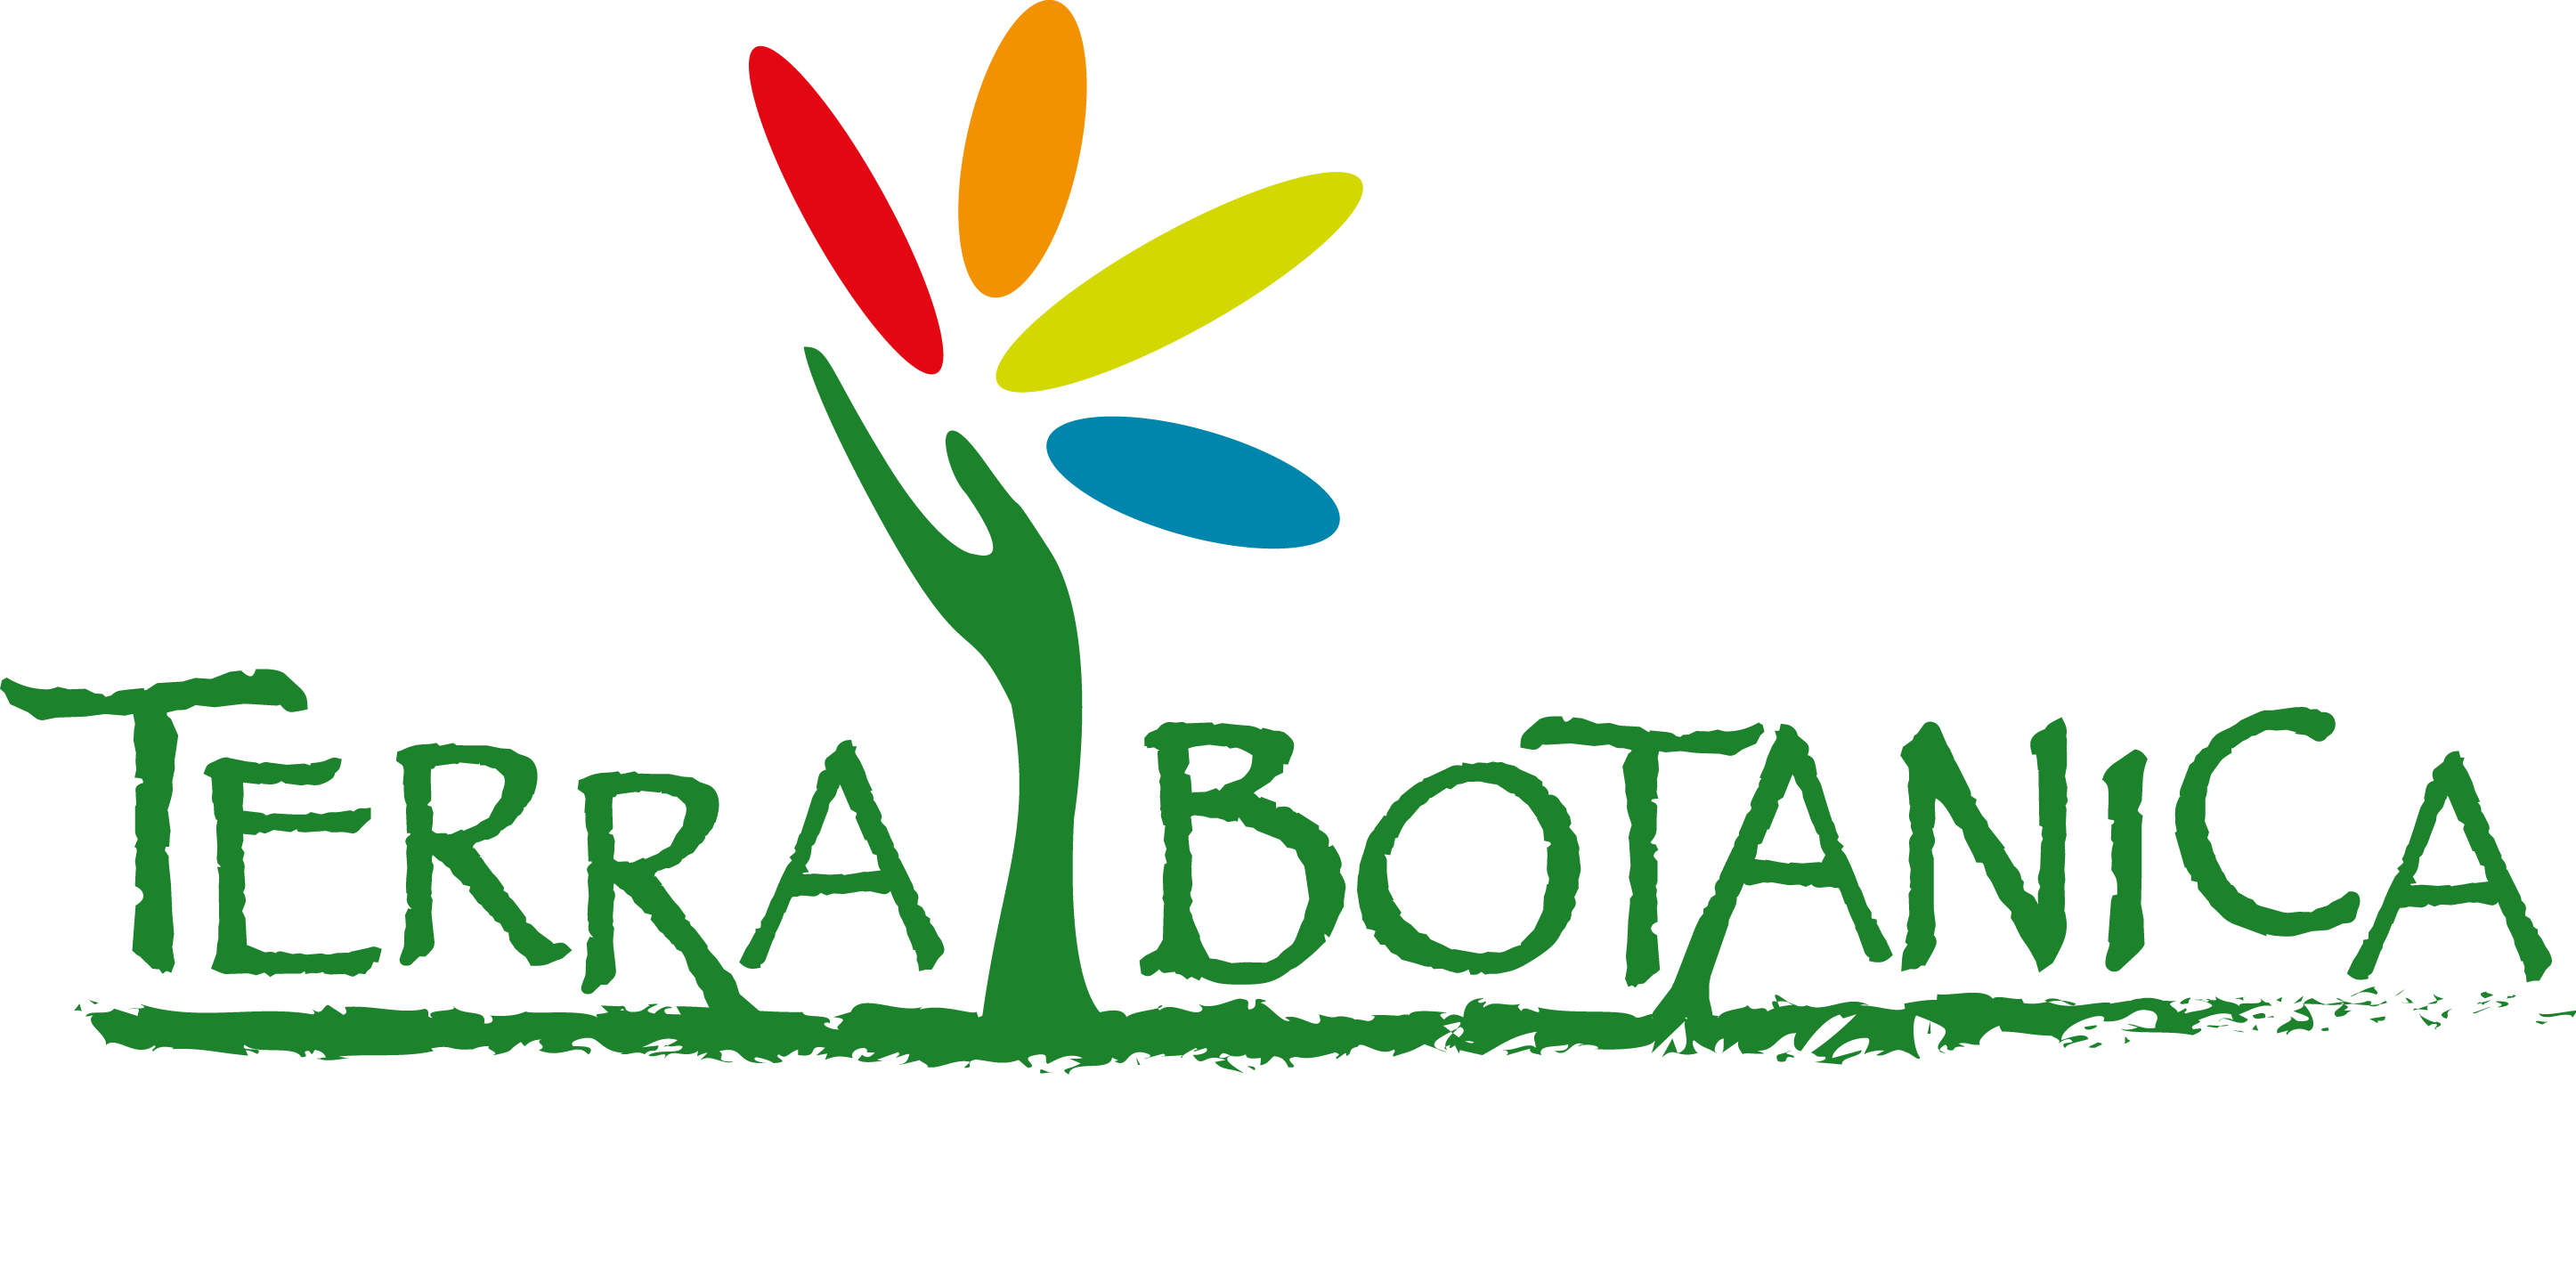 Logo Biotanica